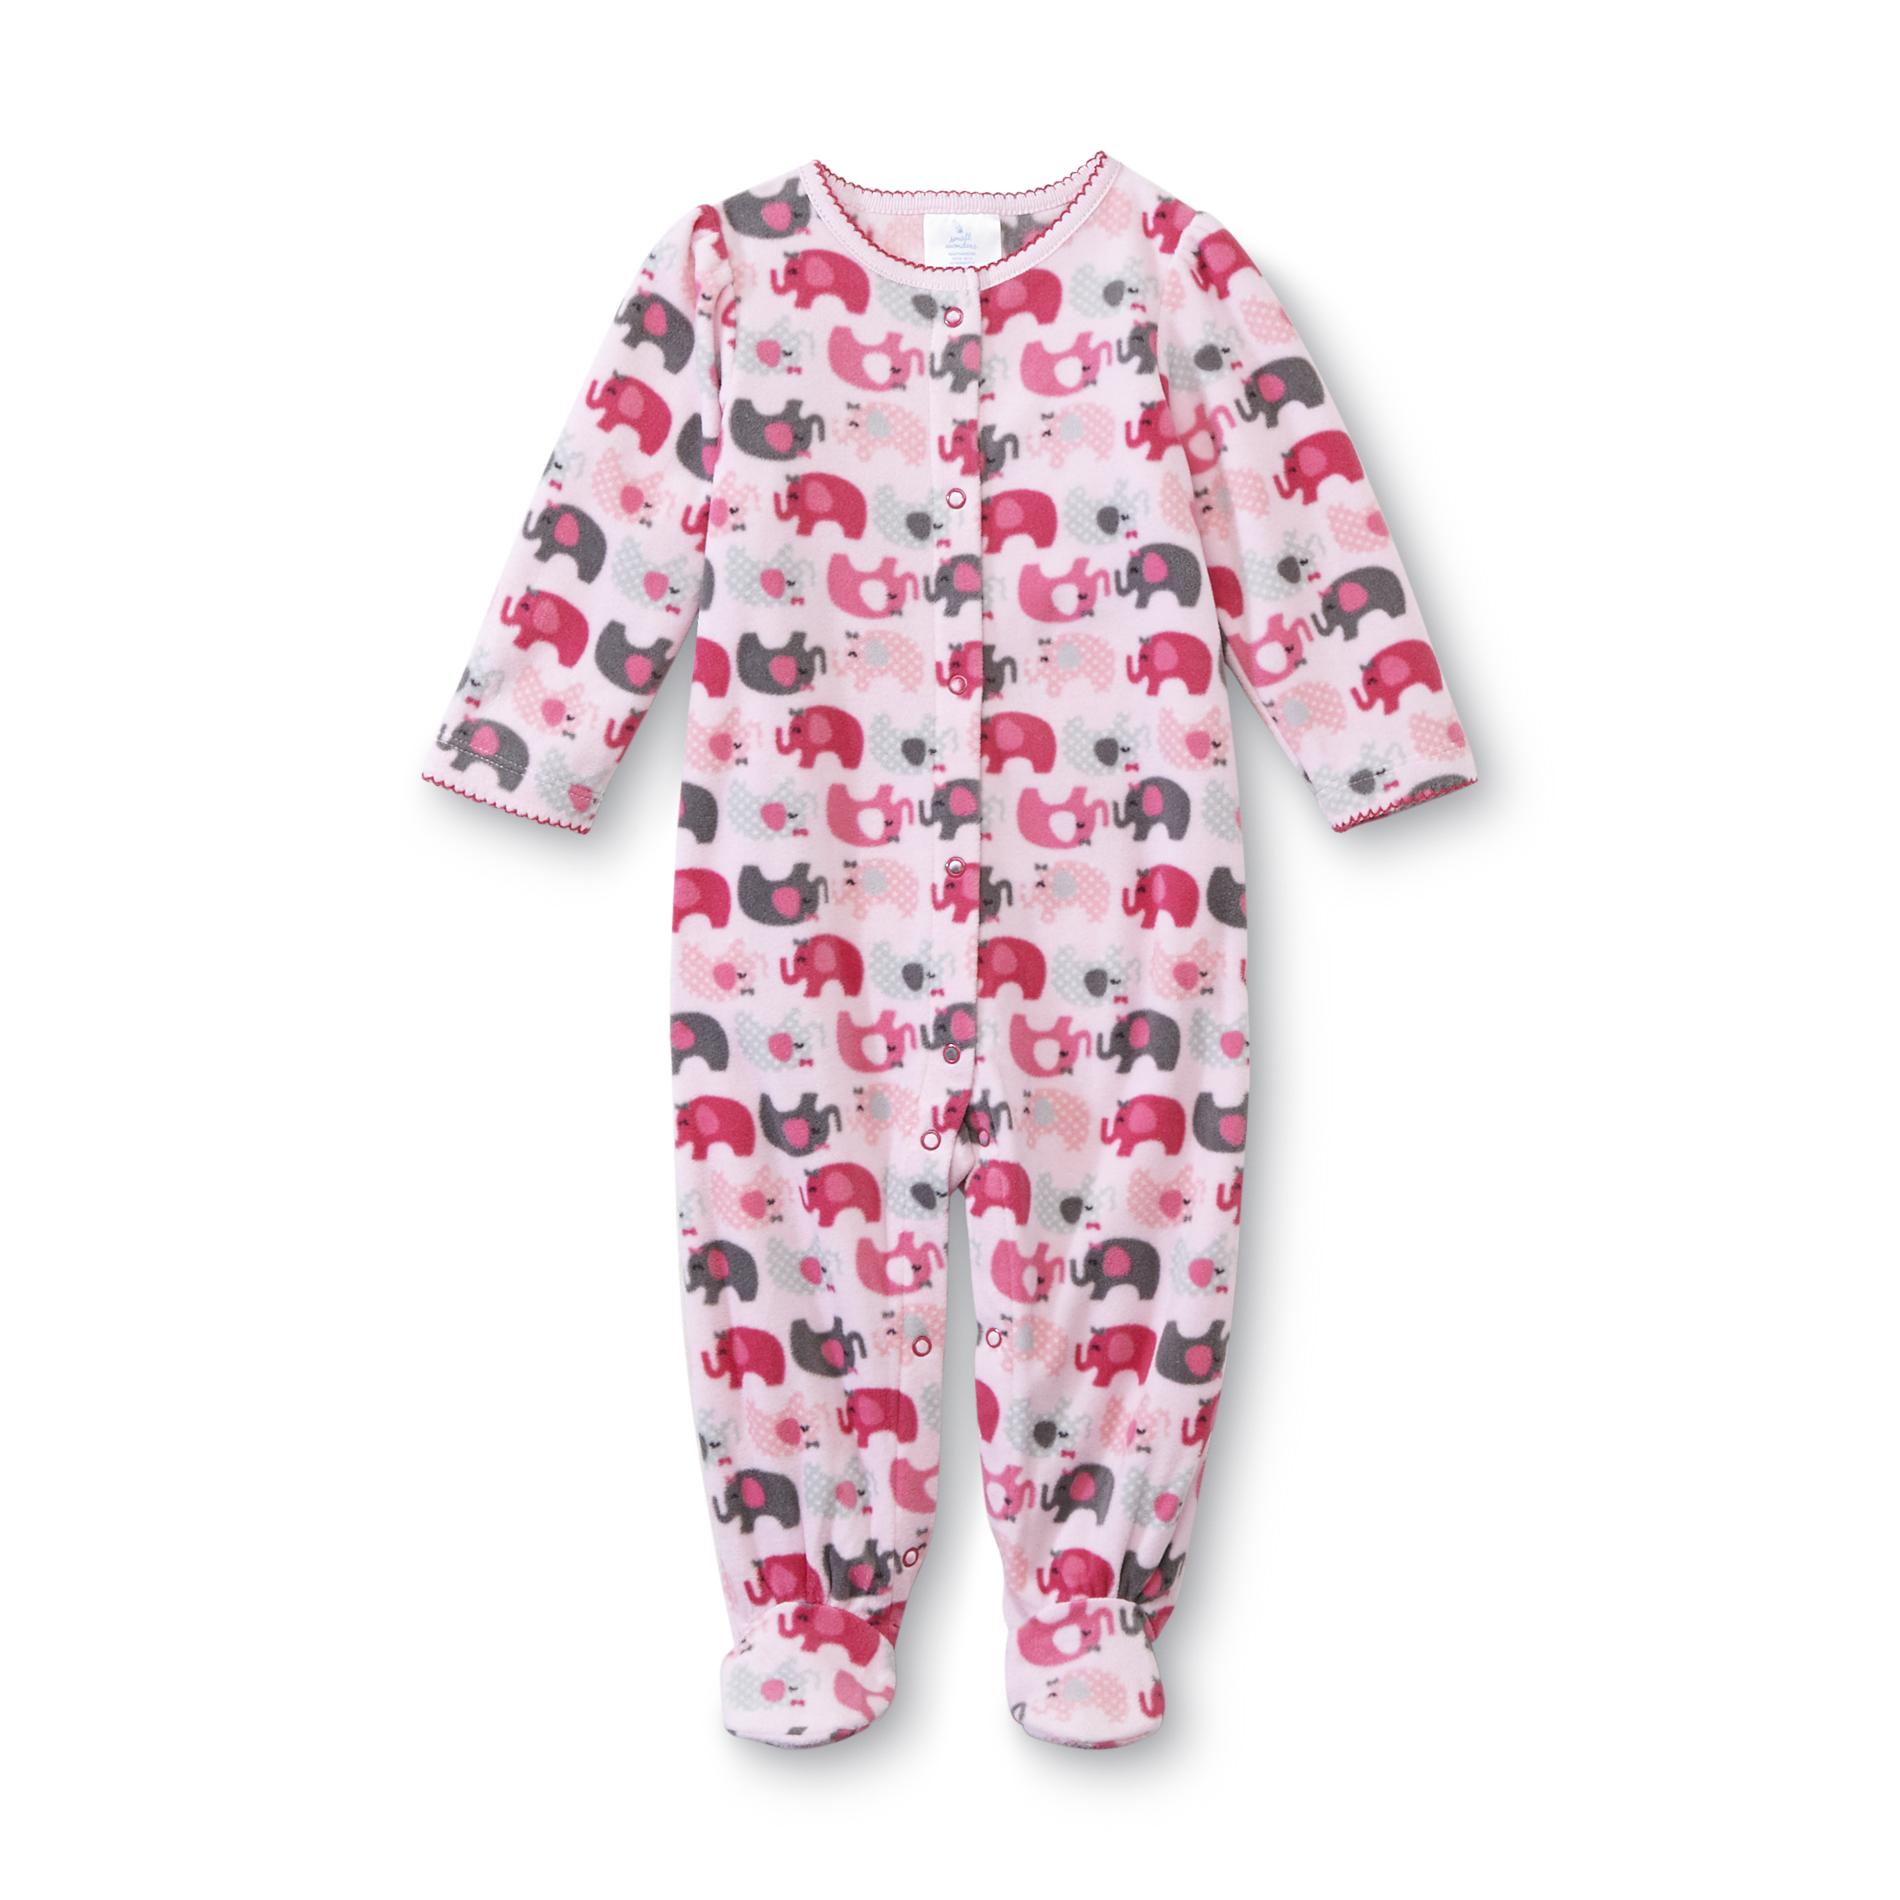 Small Wonders Newborn Girl's Footed Pajamas - Elephant